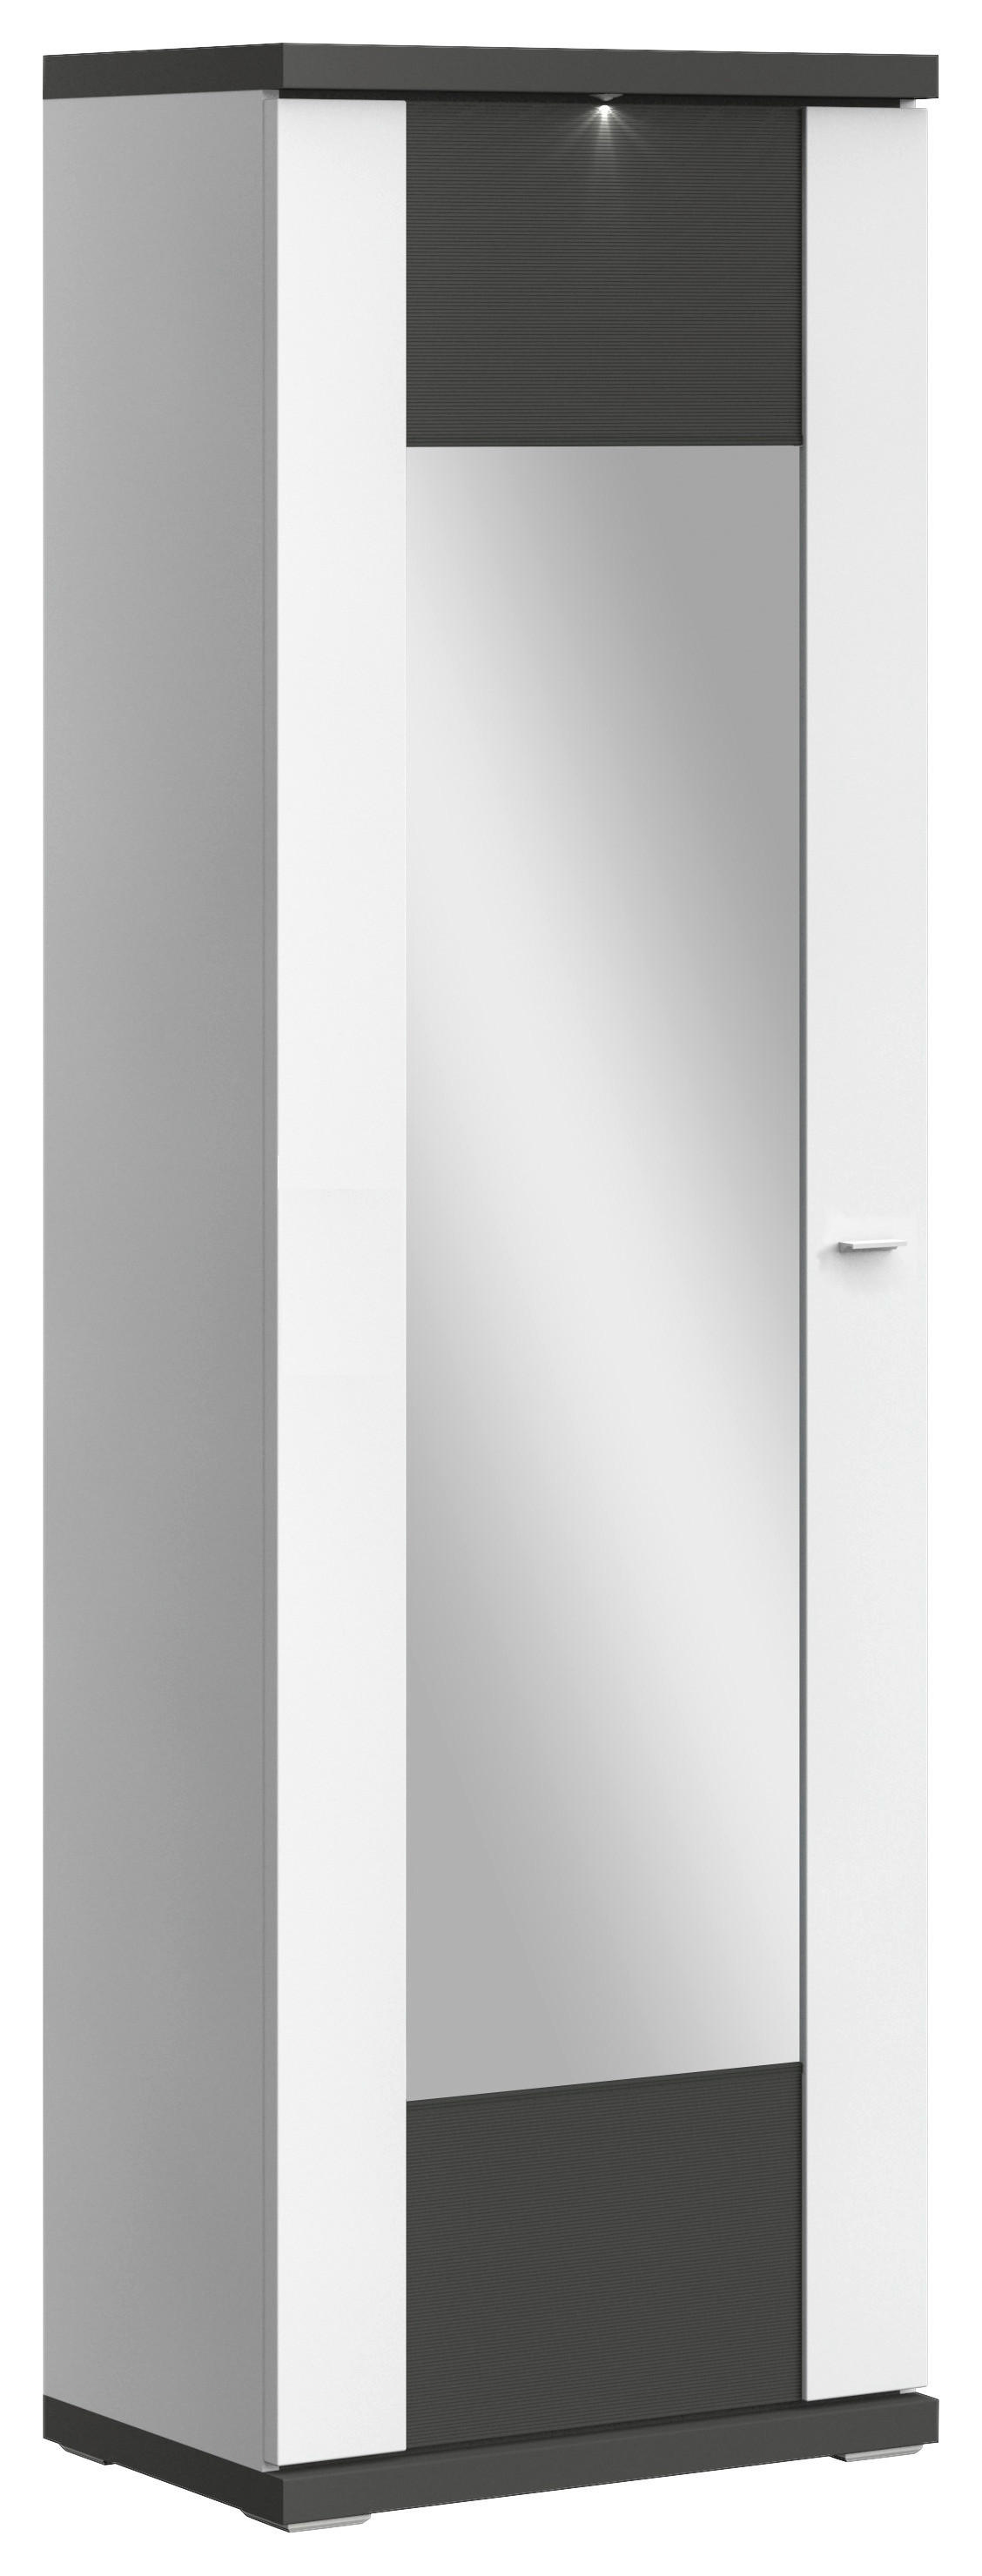 GARDEROBE Graphitfarben, Weiß  - Graphitfarben/Weiß, Design (130,1/206,6/41,6cm) - Xora